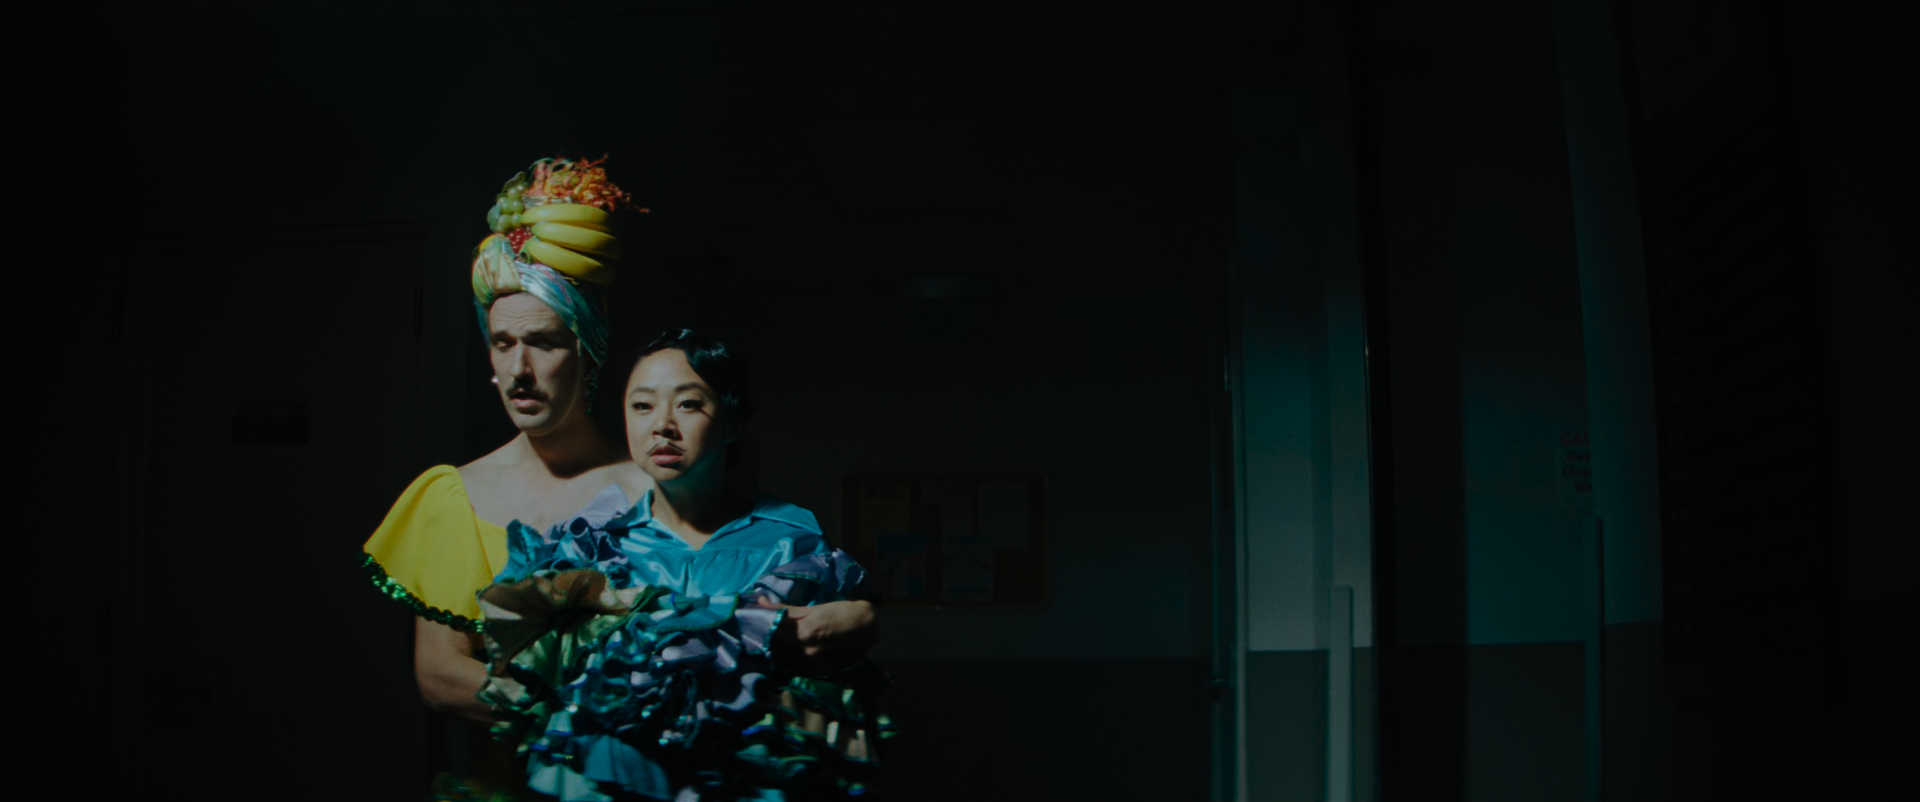 EEAAO Screenshot- The cop wearing a Carmen Miranda drag, Jobu wearing a blue, green, and purple ruffle coat and mustache as the male dance partner